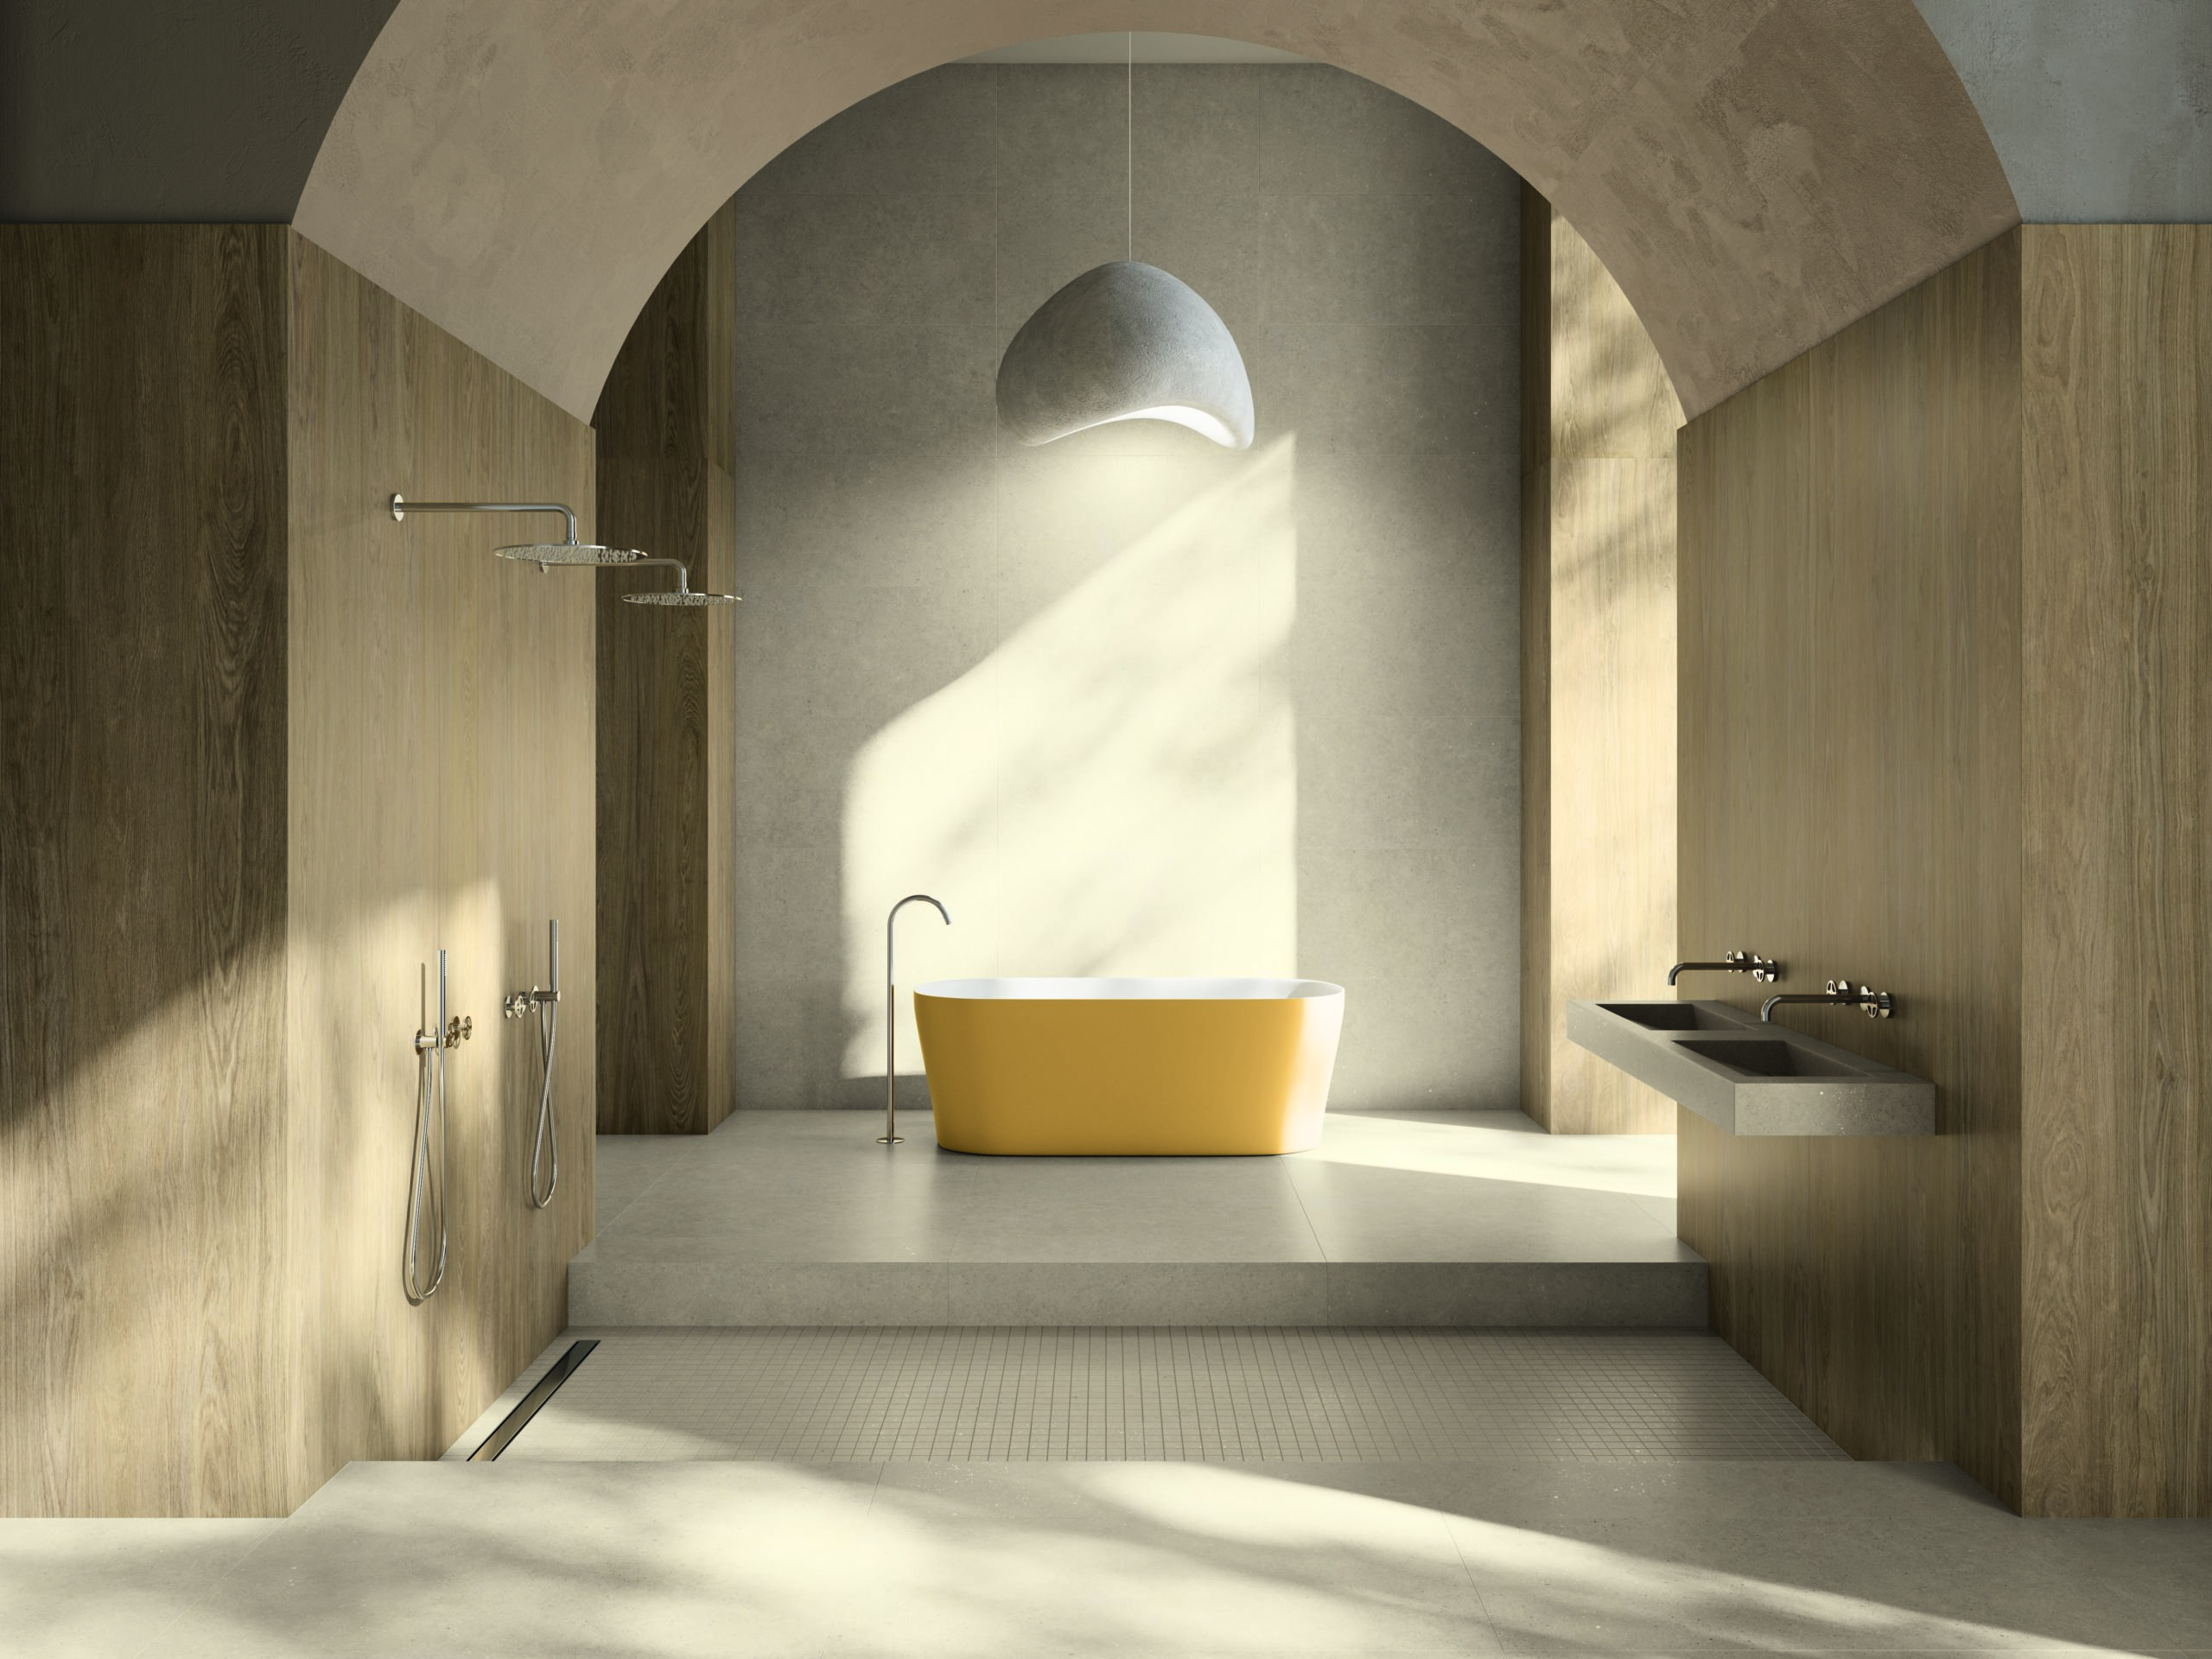 Colección KINKFOLK de XLINING con lavabo Ilbagno, presentada en Cersaie